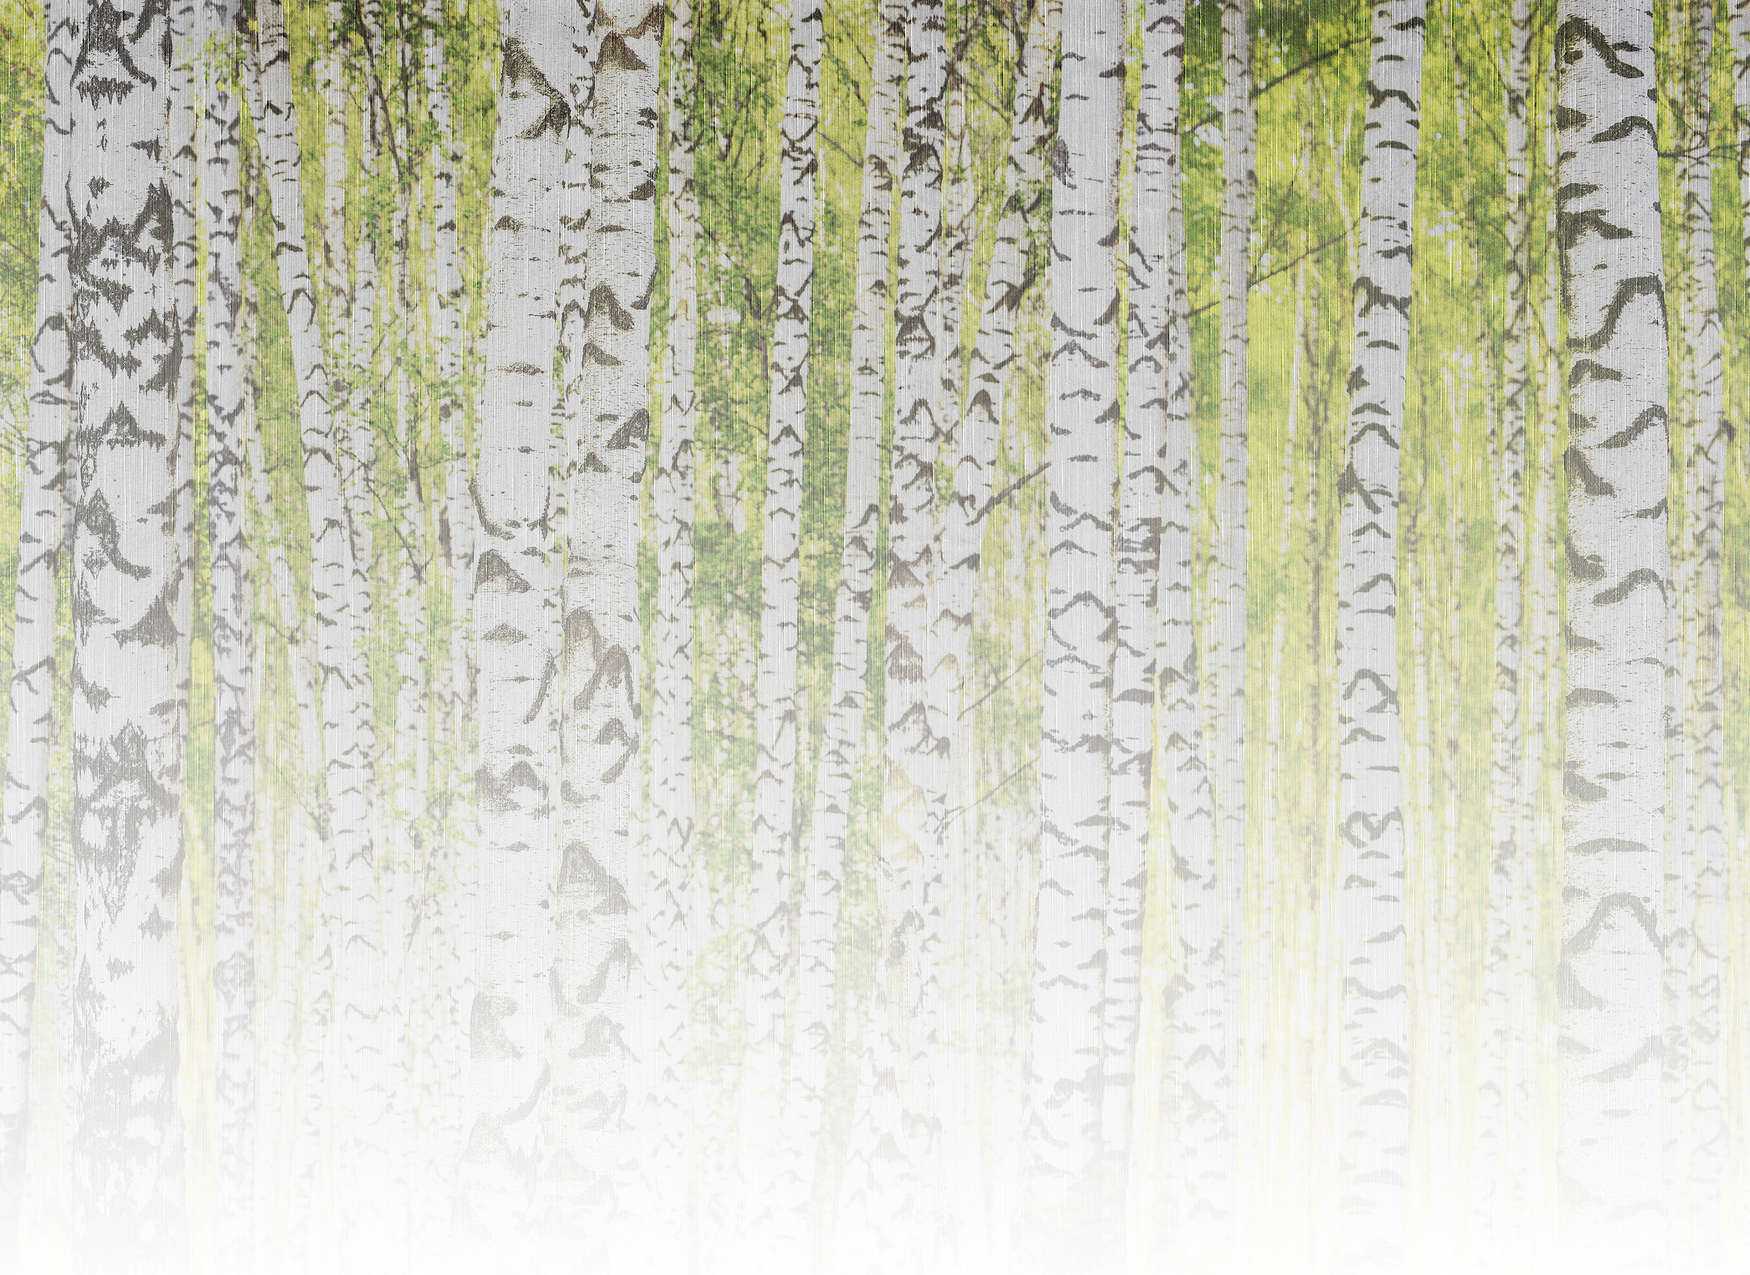             Digital behang met berkenbos in linnen textuur look - groen, wit, zwart
        